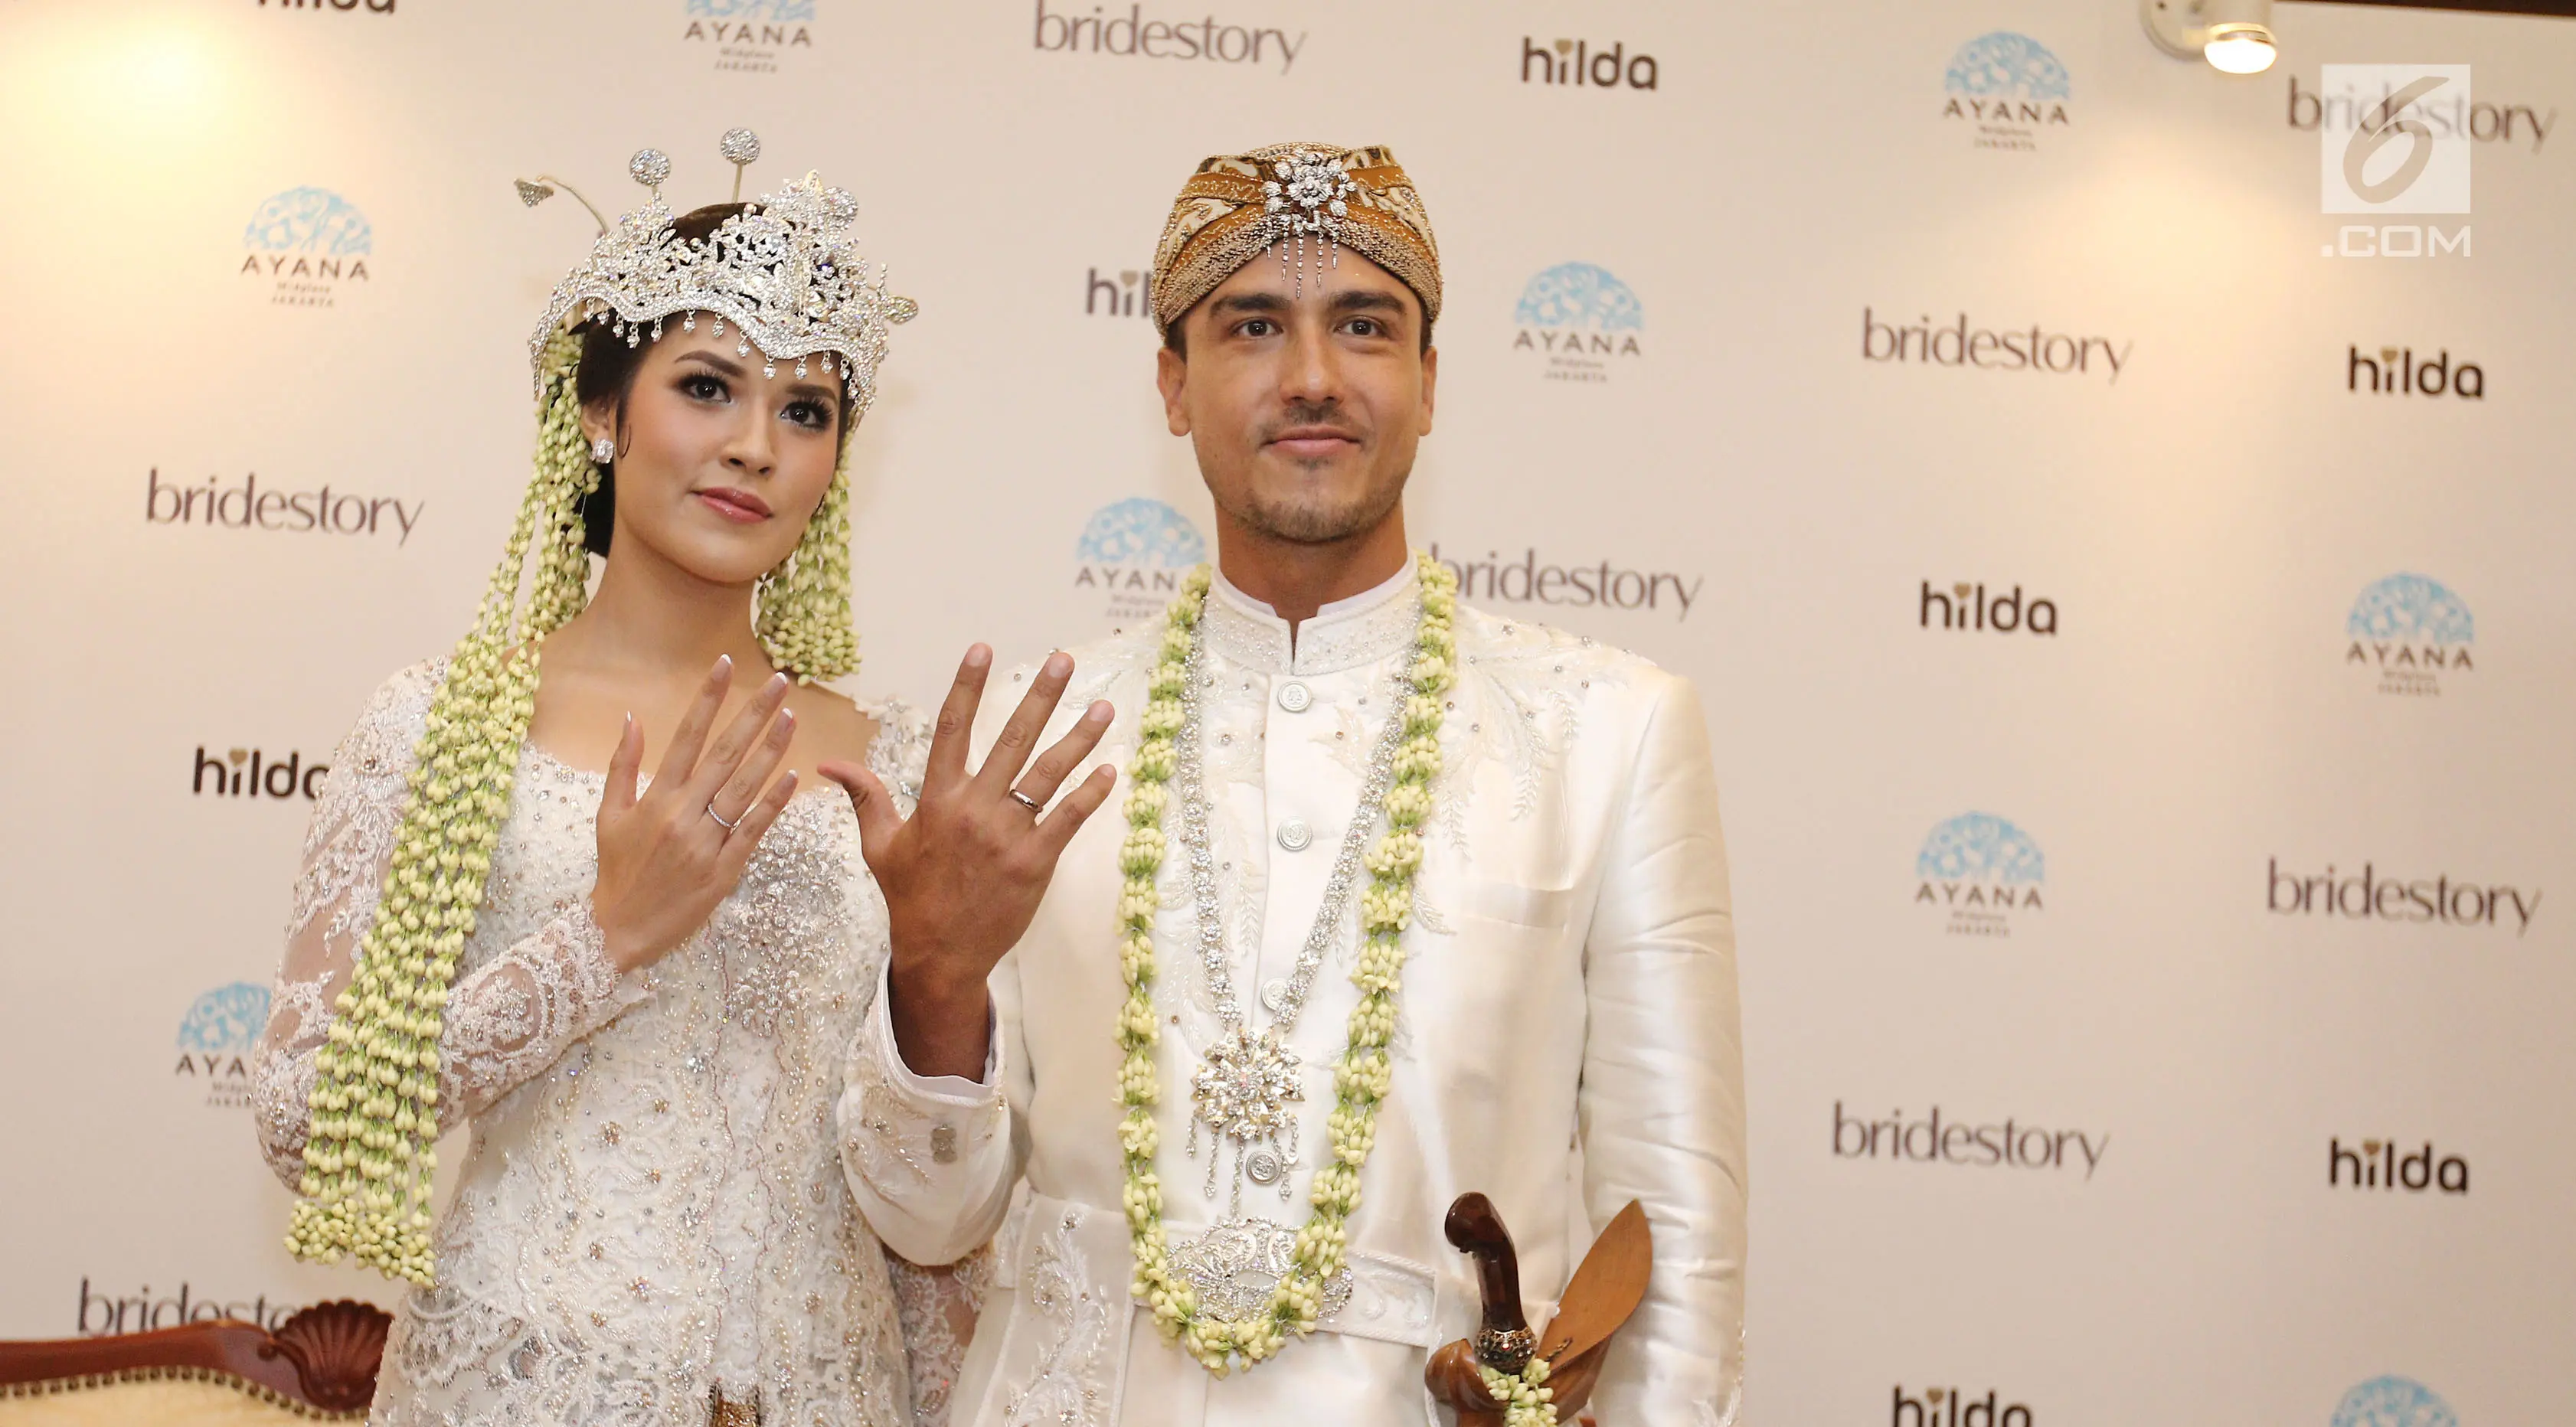 Pasangan Raisa Andriana dan Hamish Daud Wyllie menunjukkan cincin pernikahan usai jumpa pers di Ayana MidPlaza, Jakarta, Minggu (3/9). Raisa dan Hamish resmi menjadi pasangan suami istri pada 3 september 2017. (/Herman Zakharia)